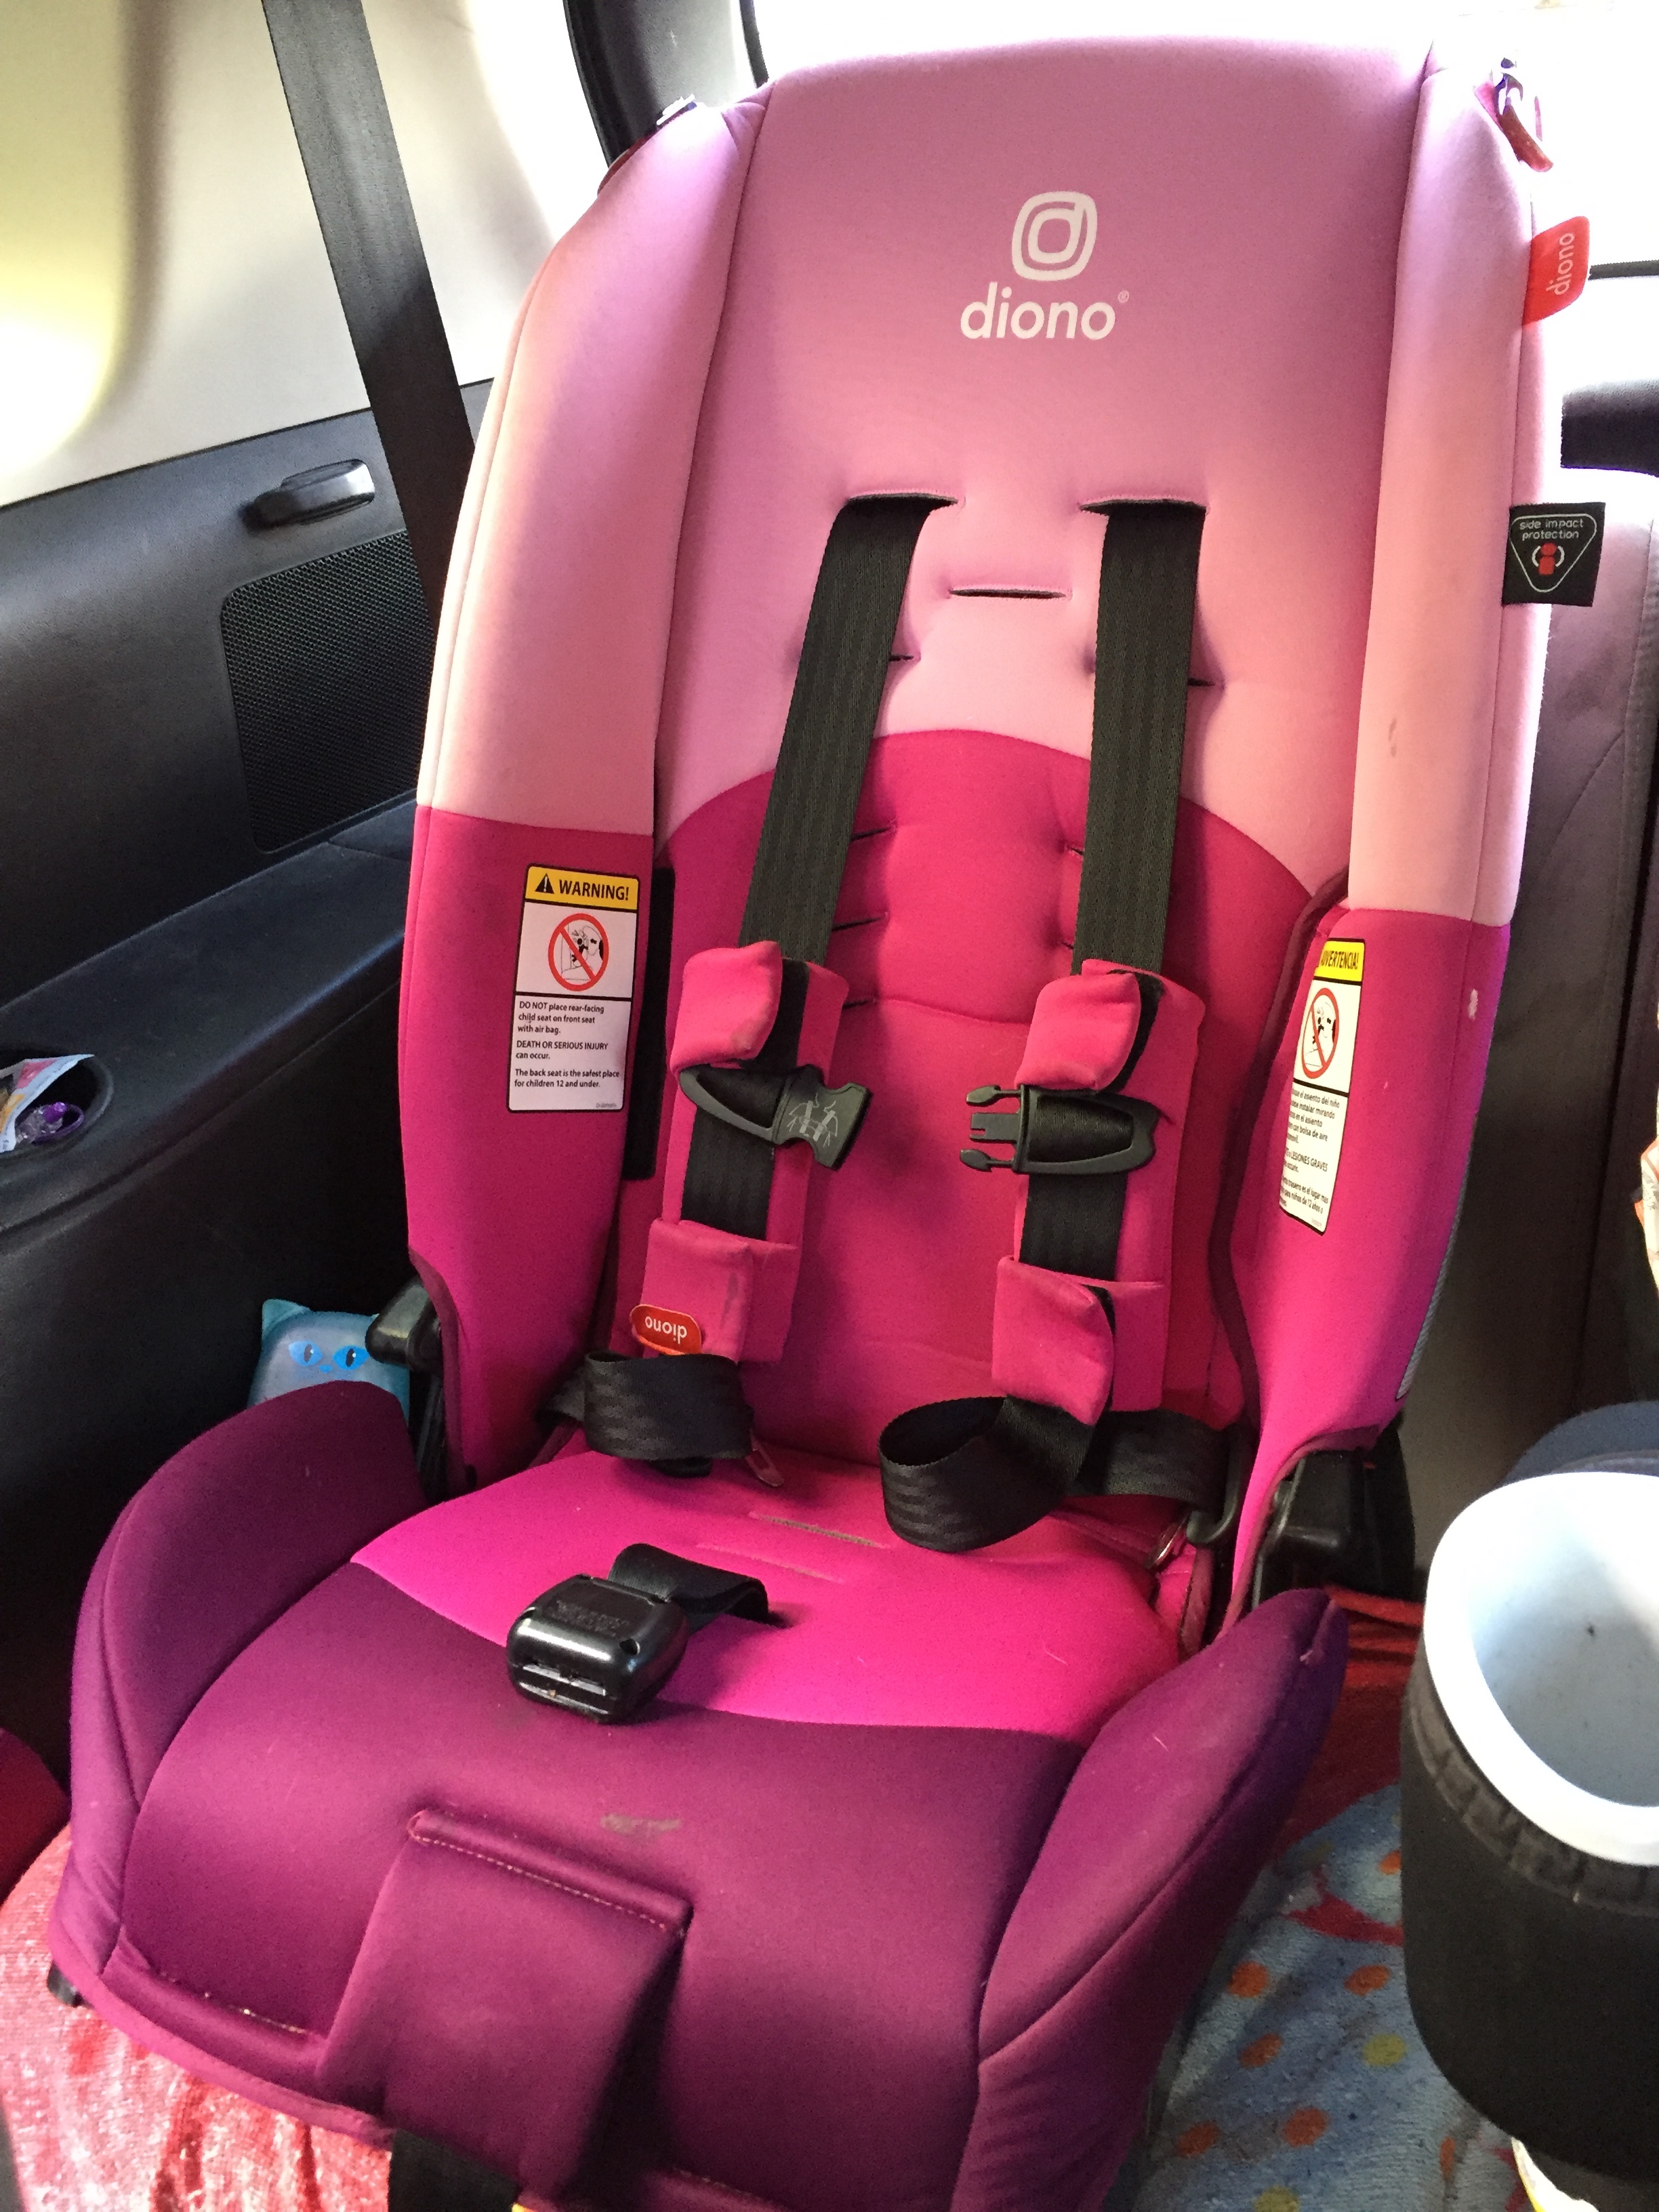 Diono Radian 3RX Car Seat Update